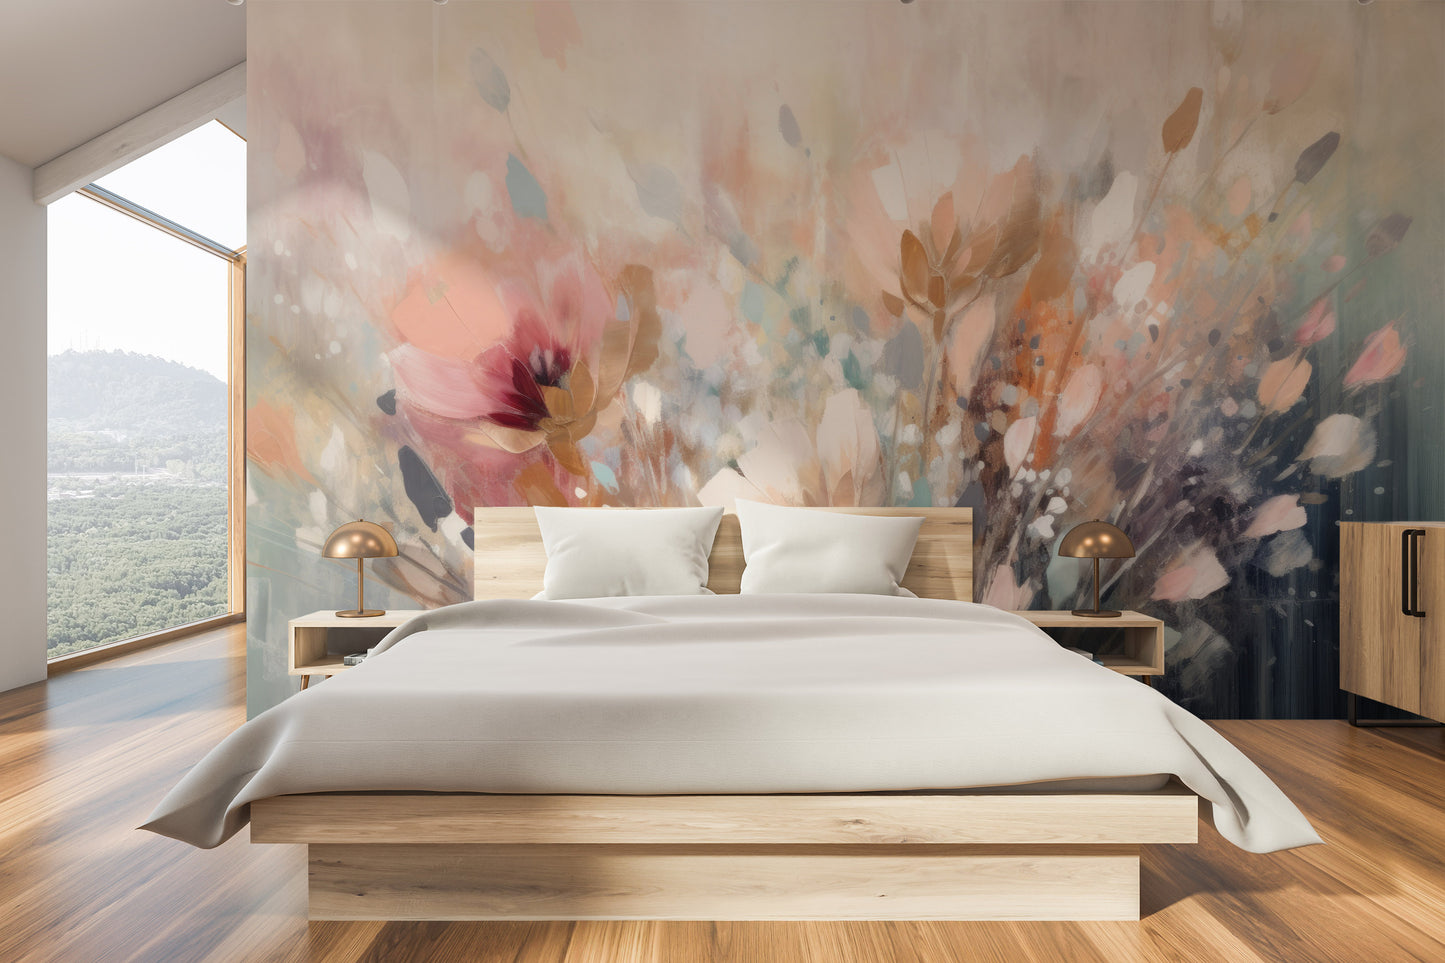 Fototapeta malowana o nazwie Dreamy Floral Impression pokazana w aranżacji wnętrza.